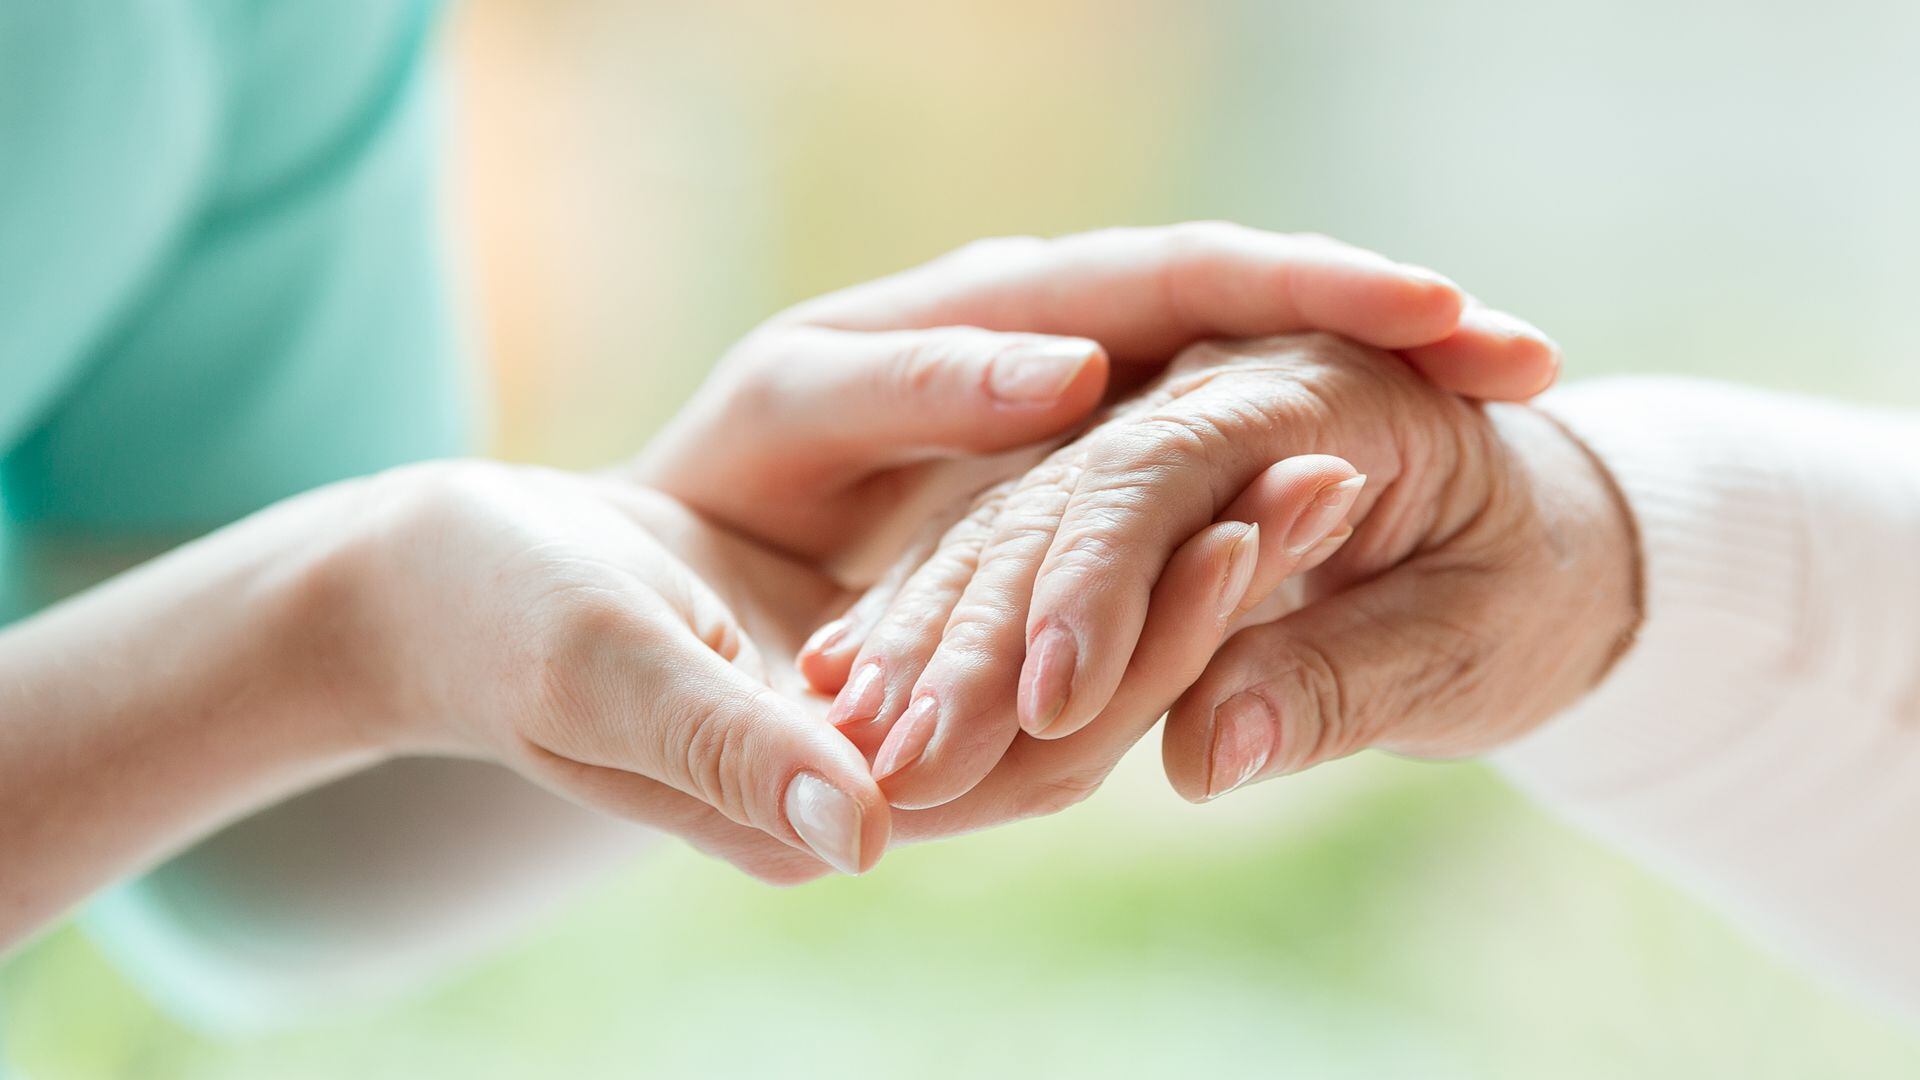 Los cuidadores enfrentan desafíos emocionales en la atención de pacientes con Parkinson